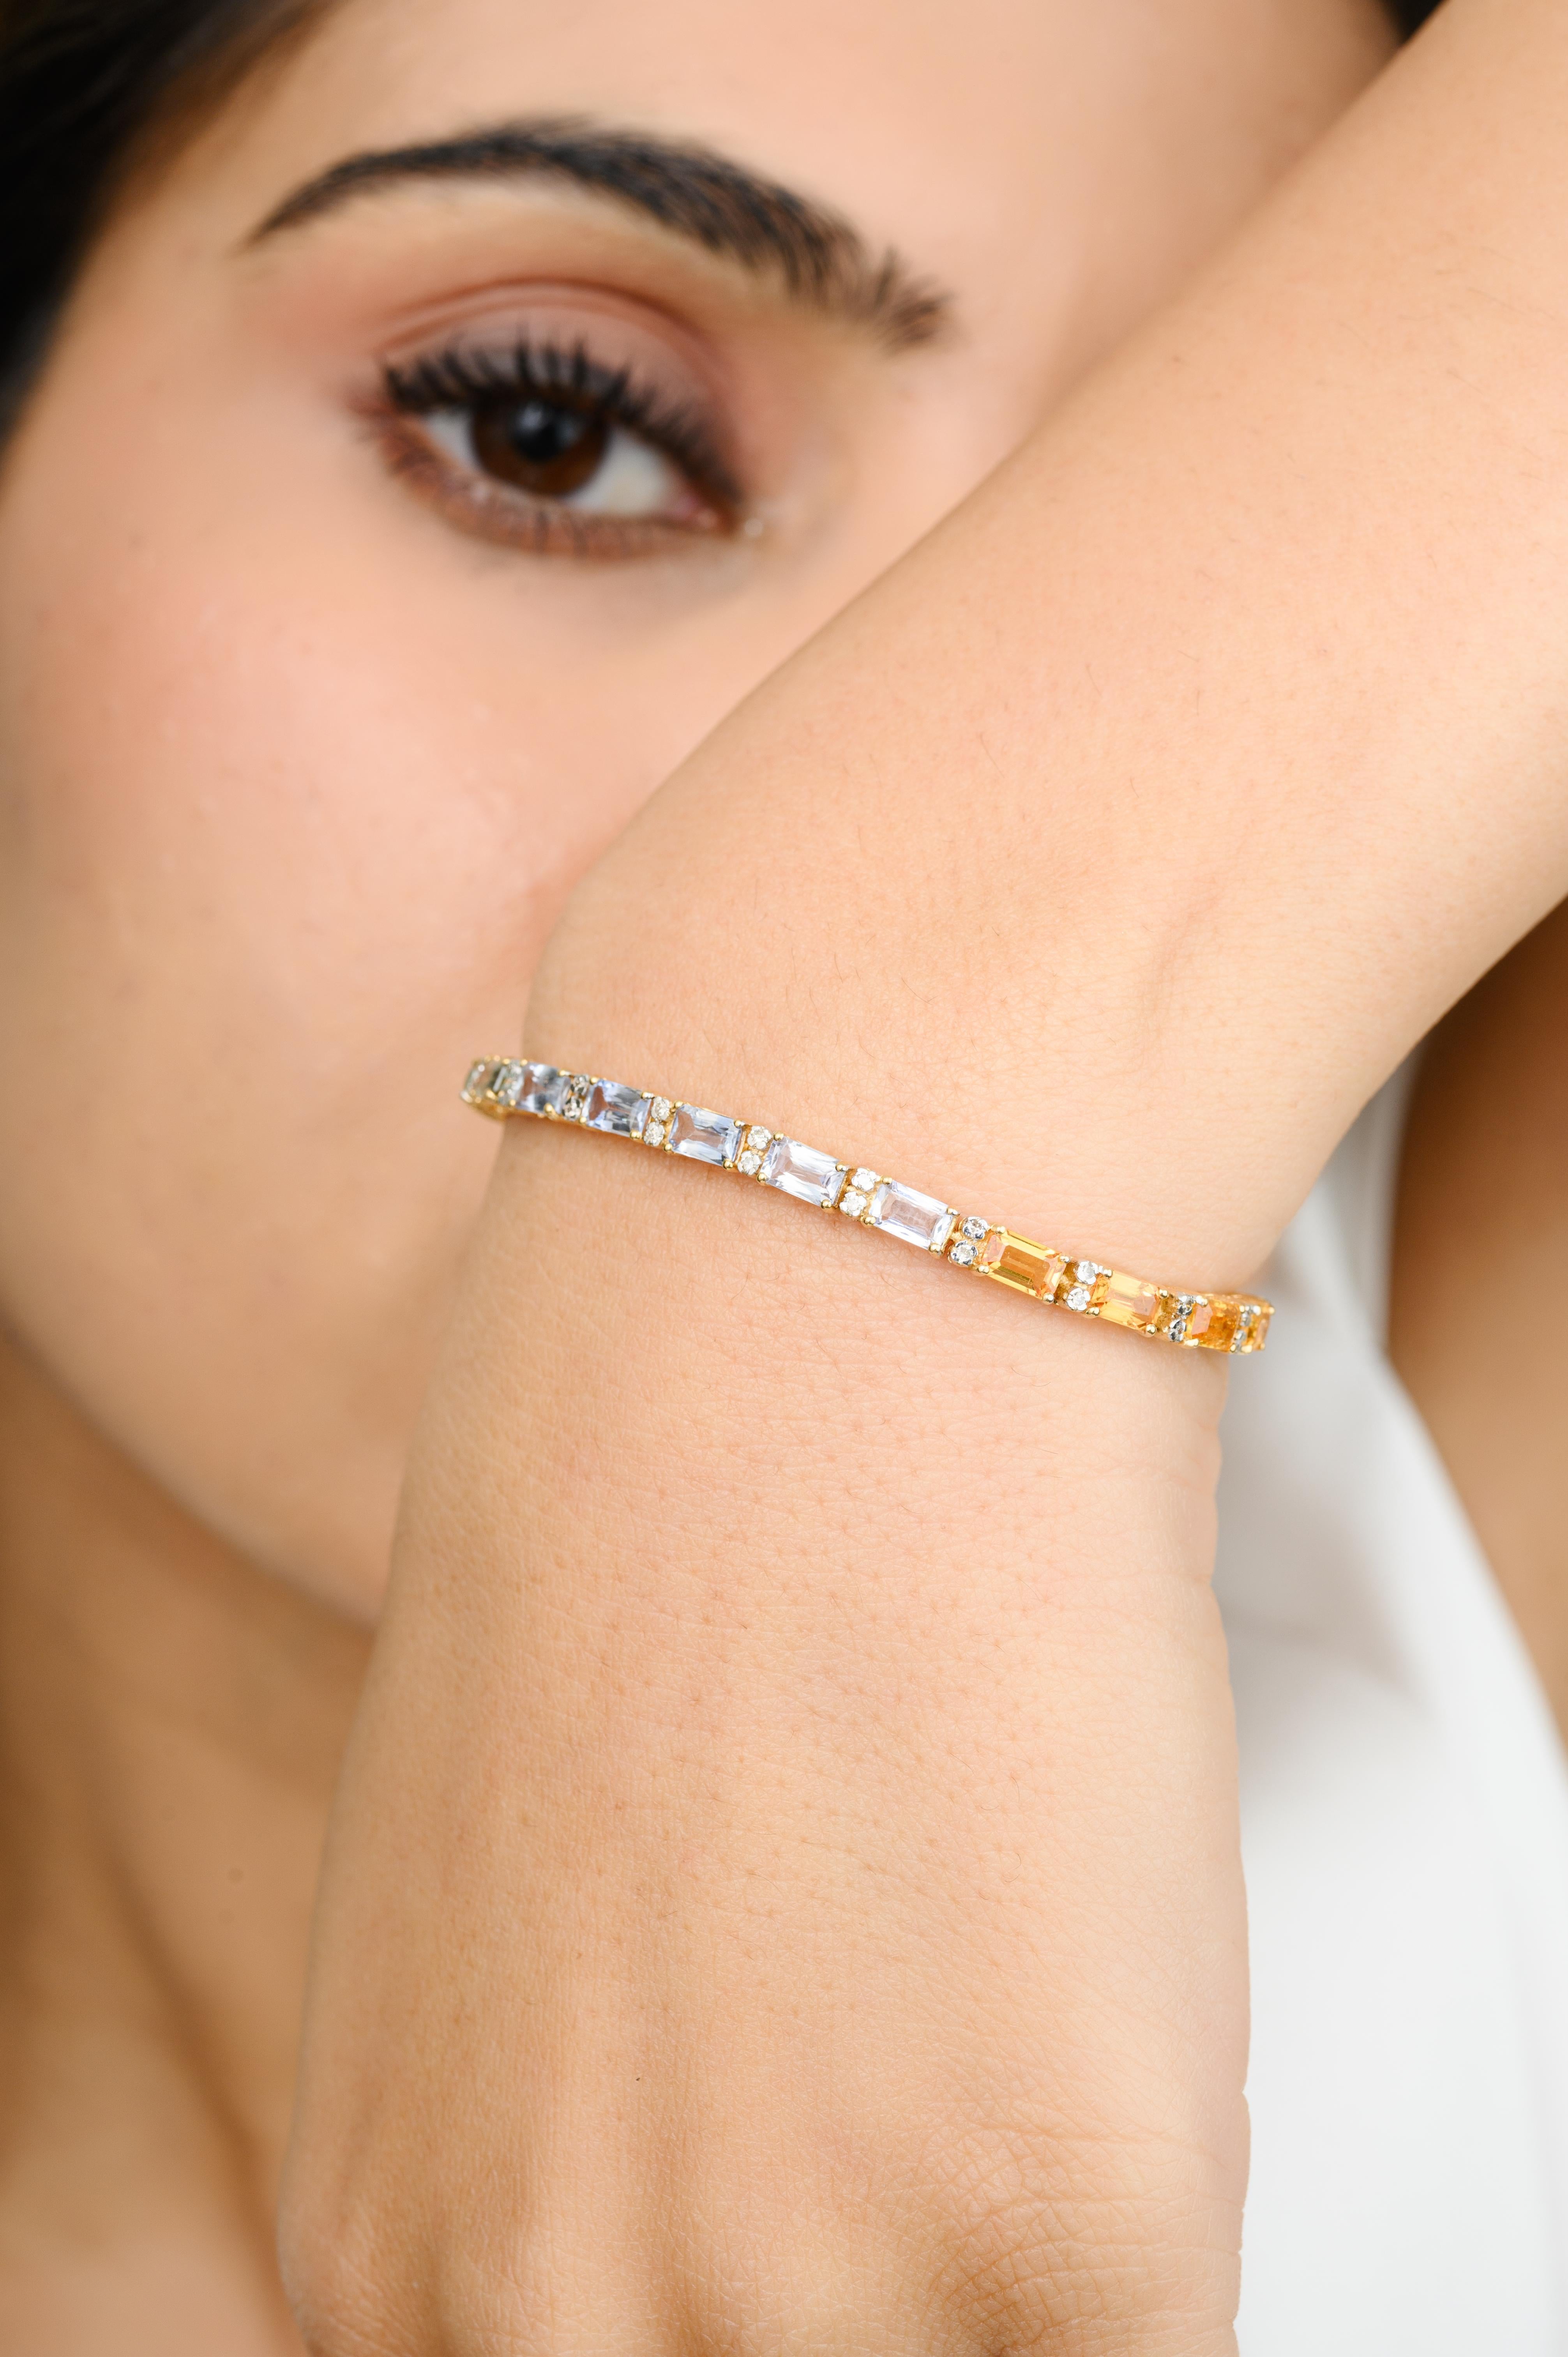 Ce bracelet de tennis en or 18 carats à saphirs multiples et diamants précieux met en valeur des saphirs multiples naturels de 8,44 carats et des diamants de 0,42 carats, étincelants à l'infini. Il mesure 7.5 pouces de long. 
Le saphir stimule la